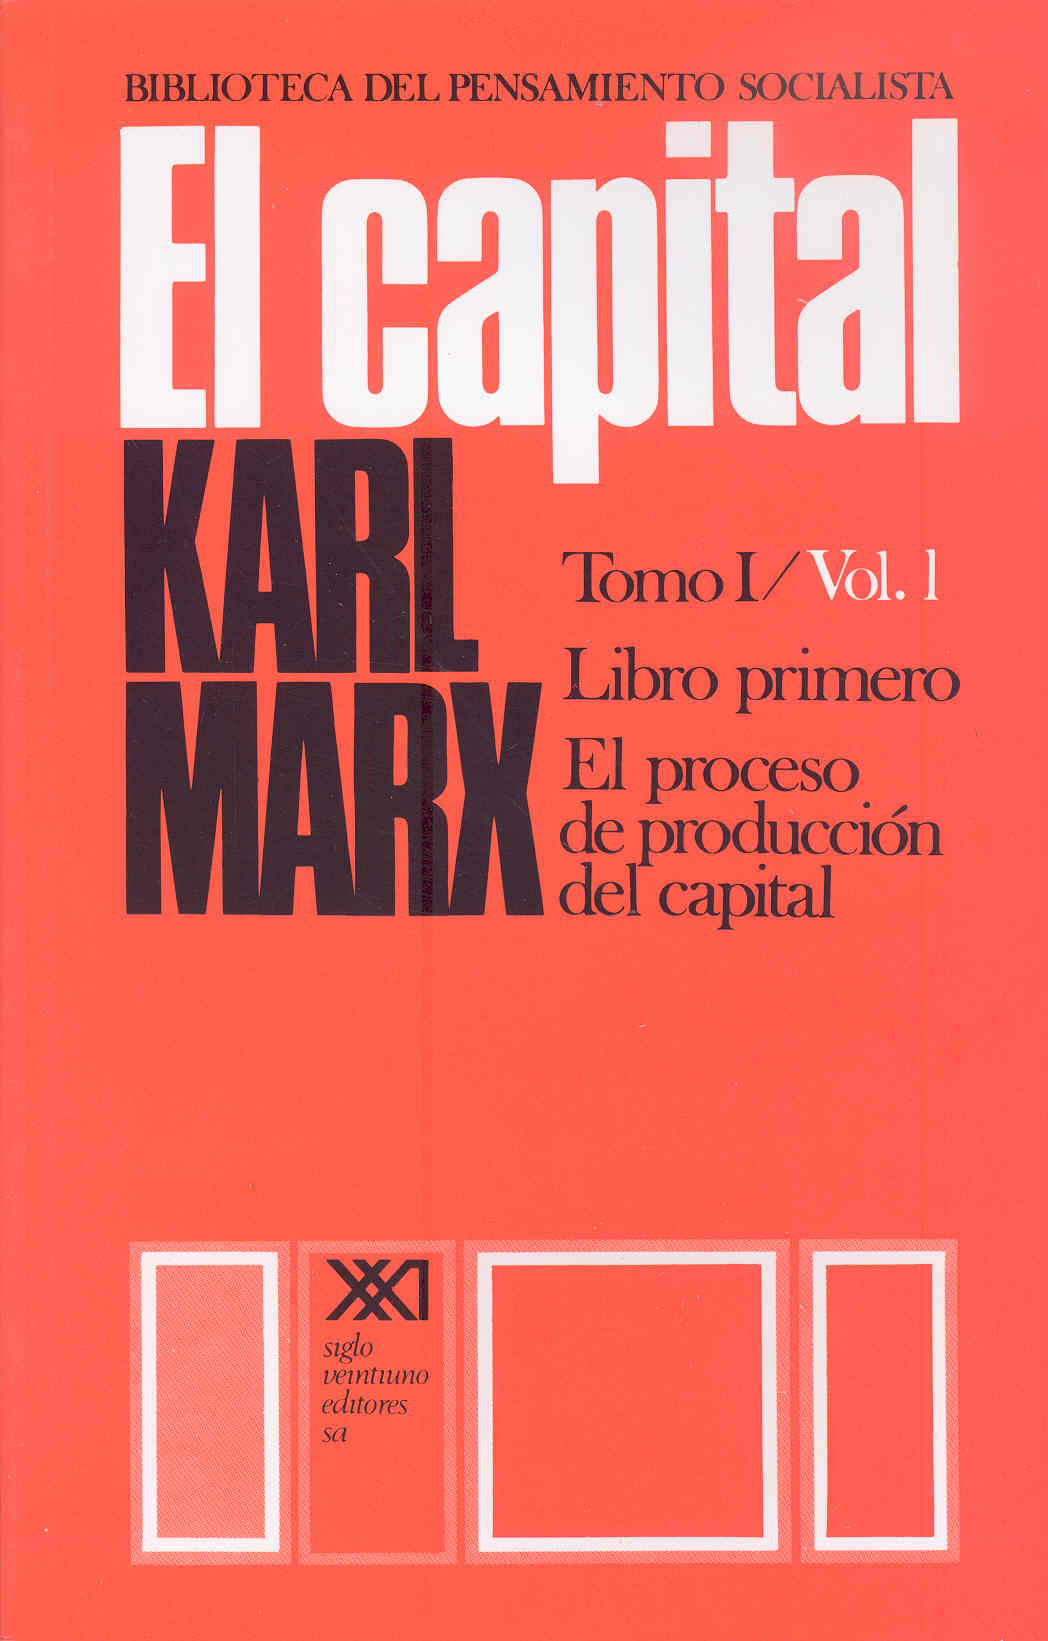 El capital. Tomo I/Vol. 1